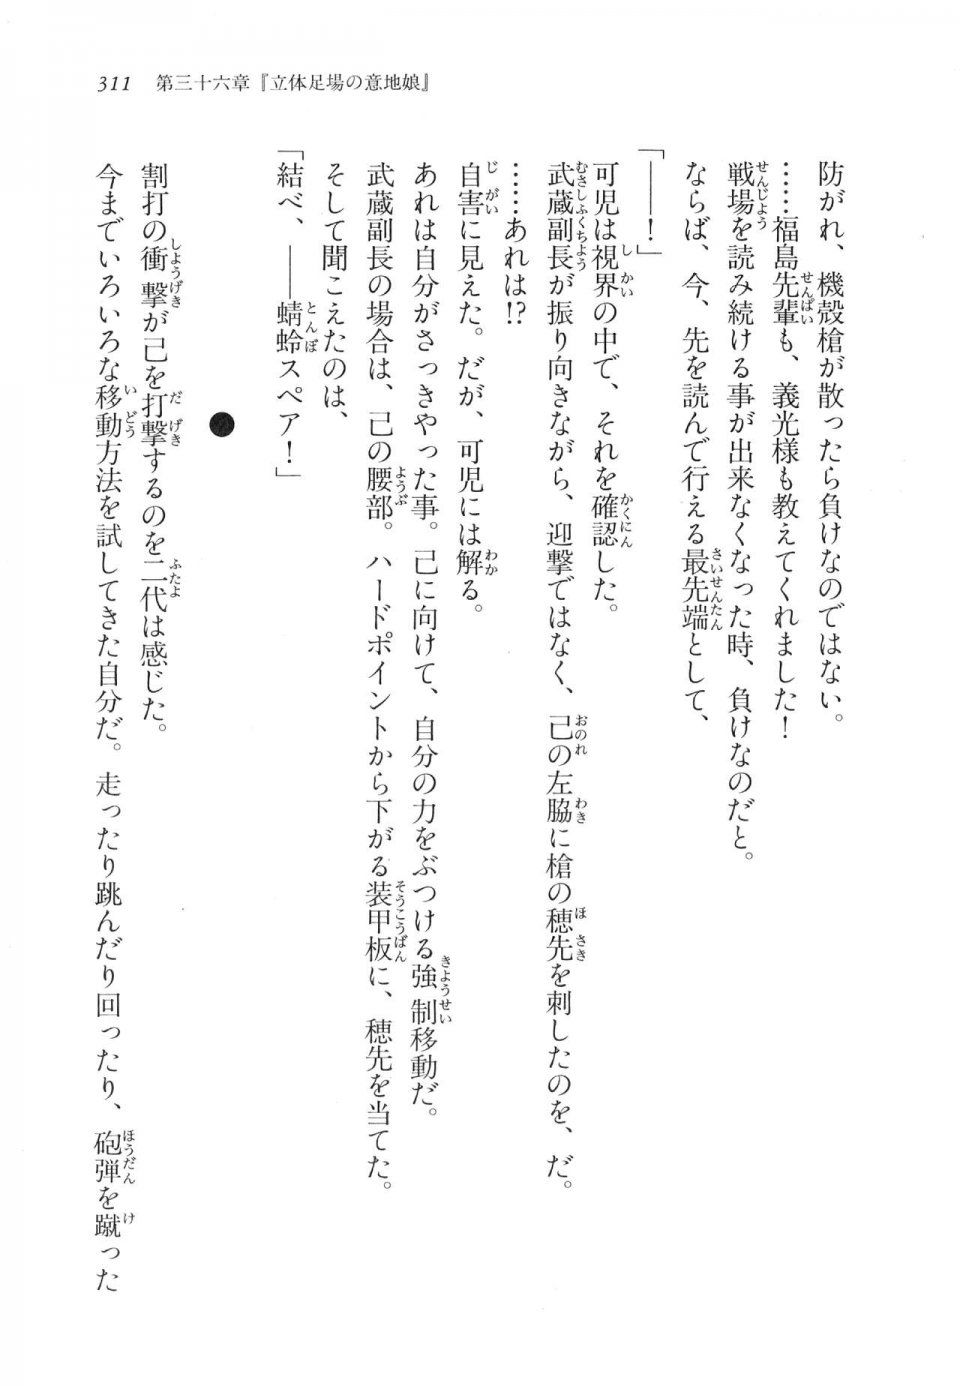 Kyoukai Senjou no Horizon LN Vol 17(7B) - Photo #311